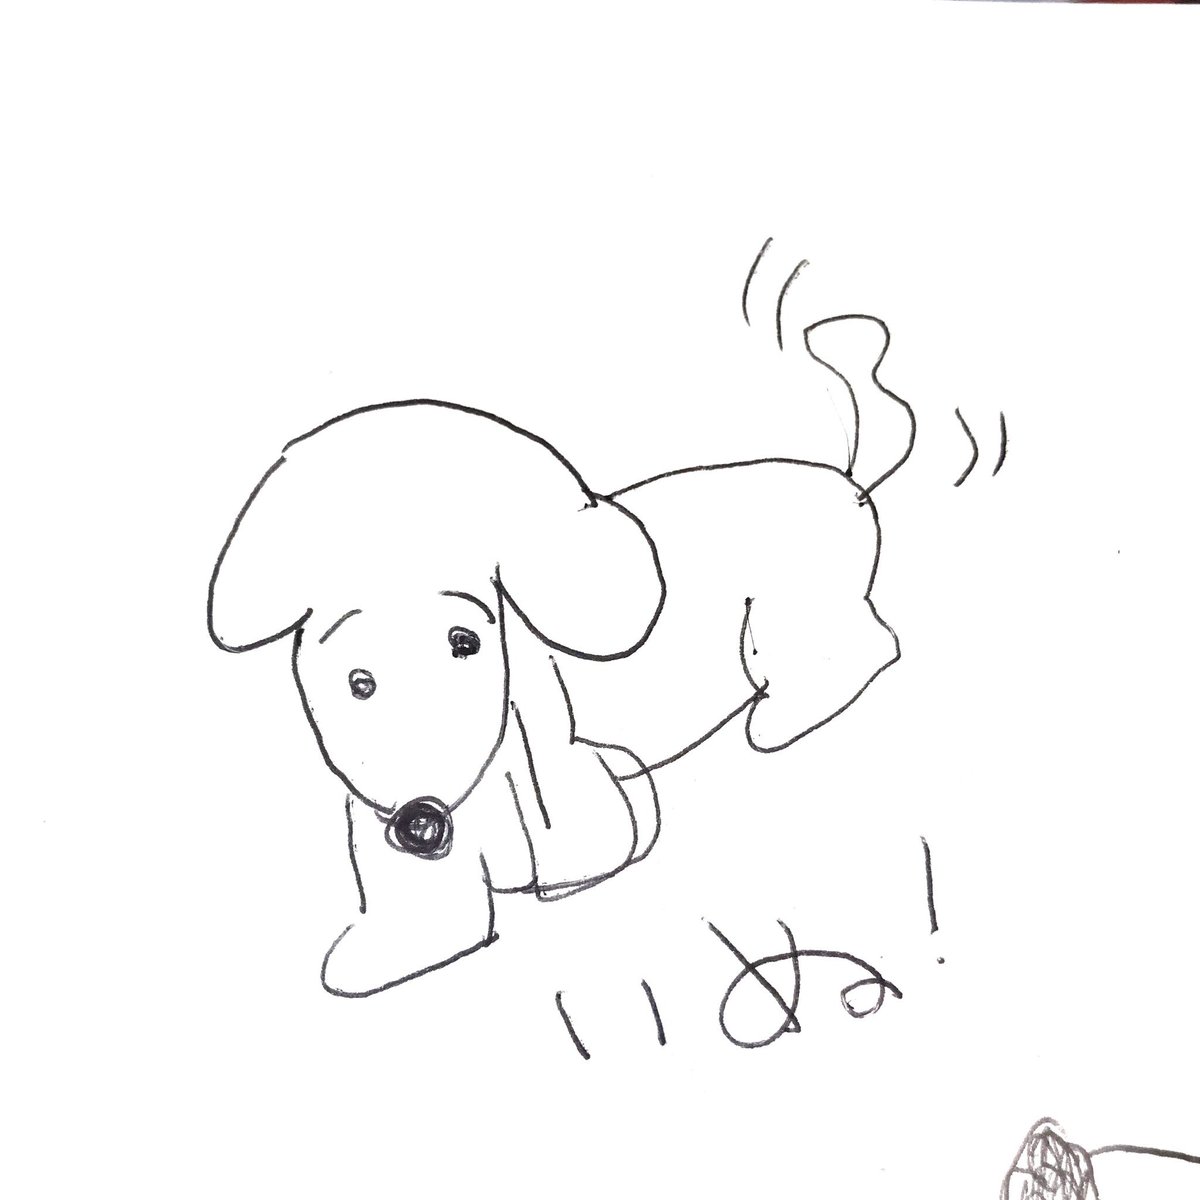 もしろbwb 犬の絵が描けないので 犬 イラスト 簡単 で検索したらトイプードルが出てきました